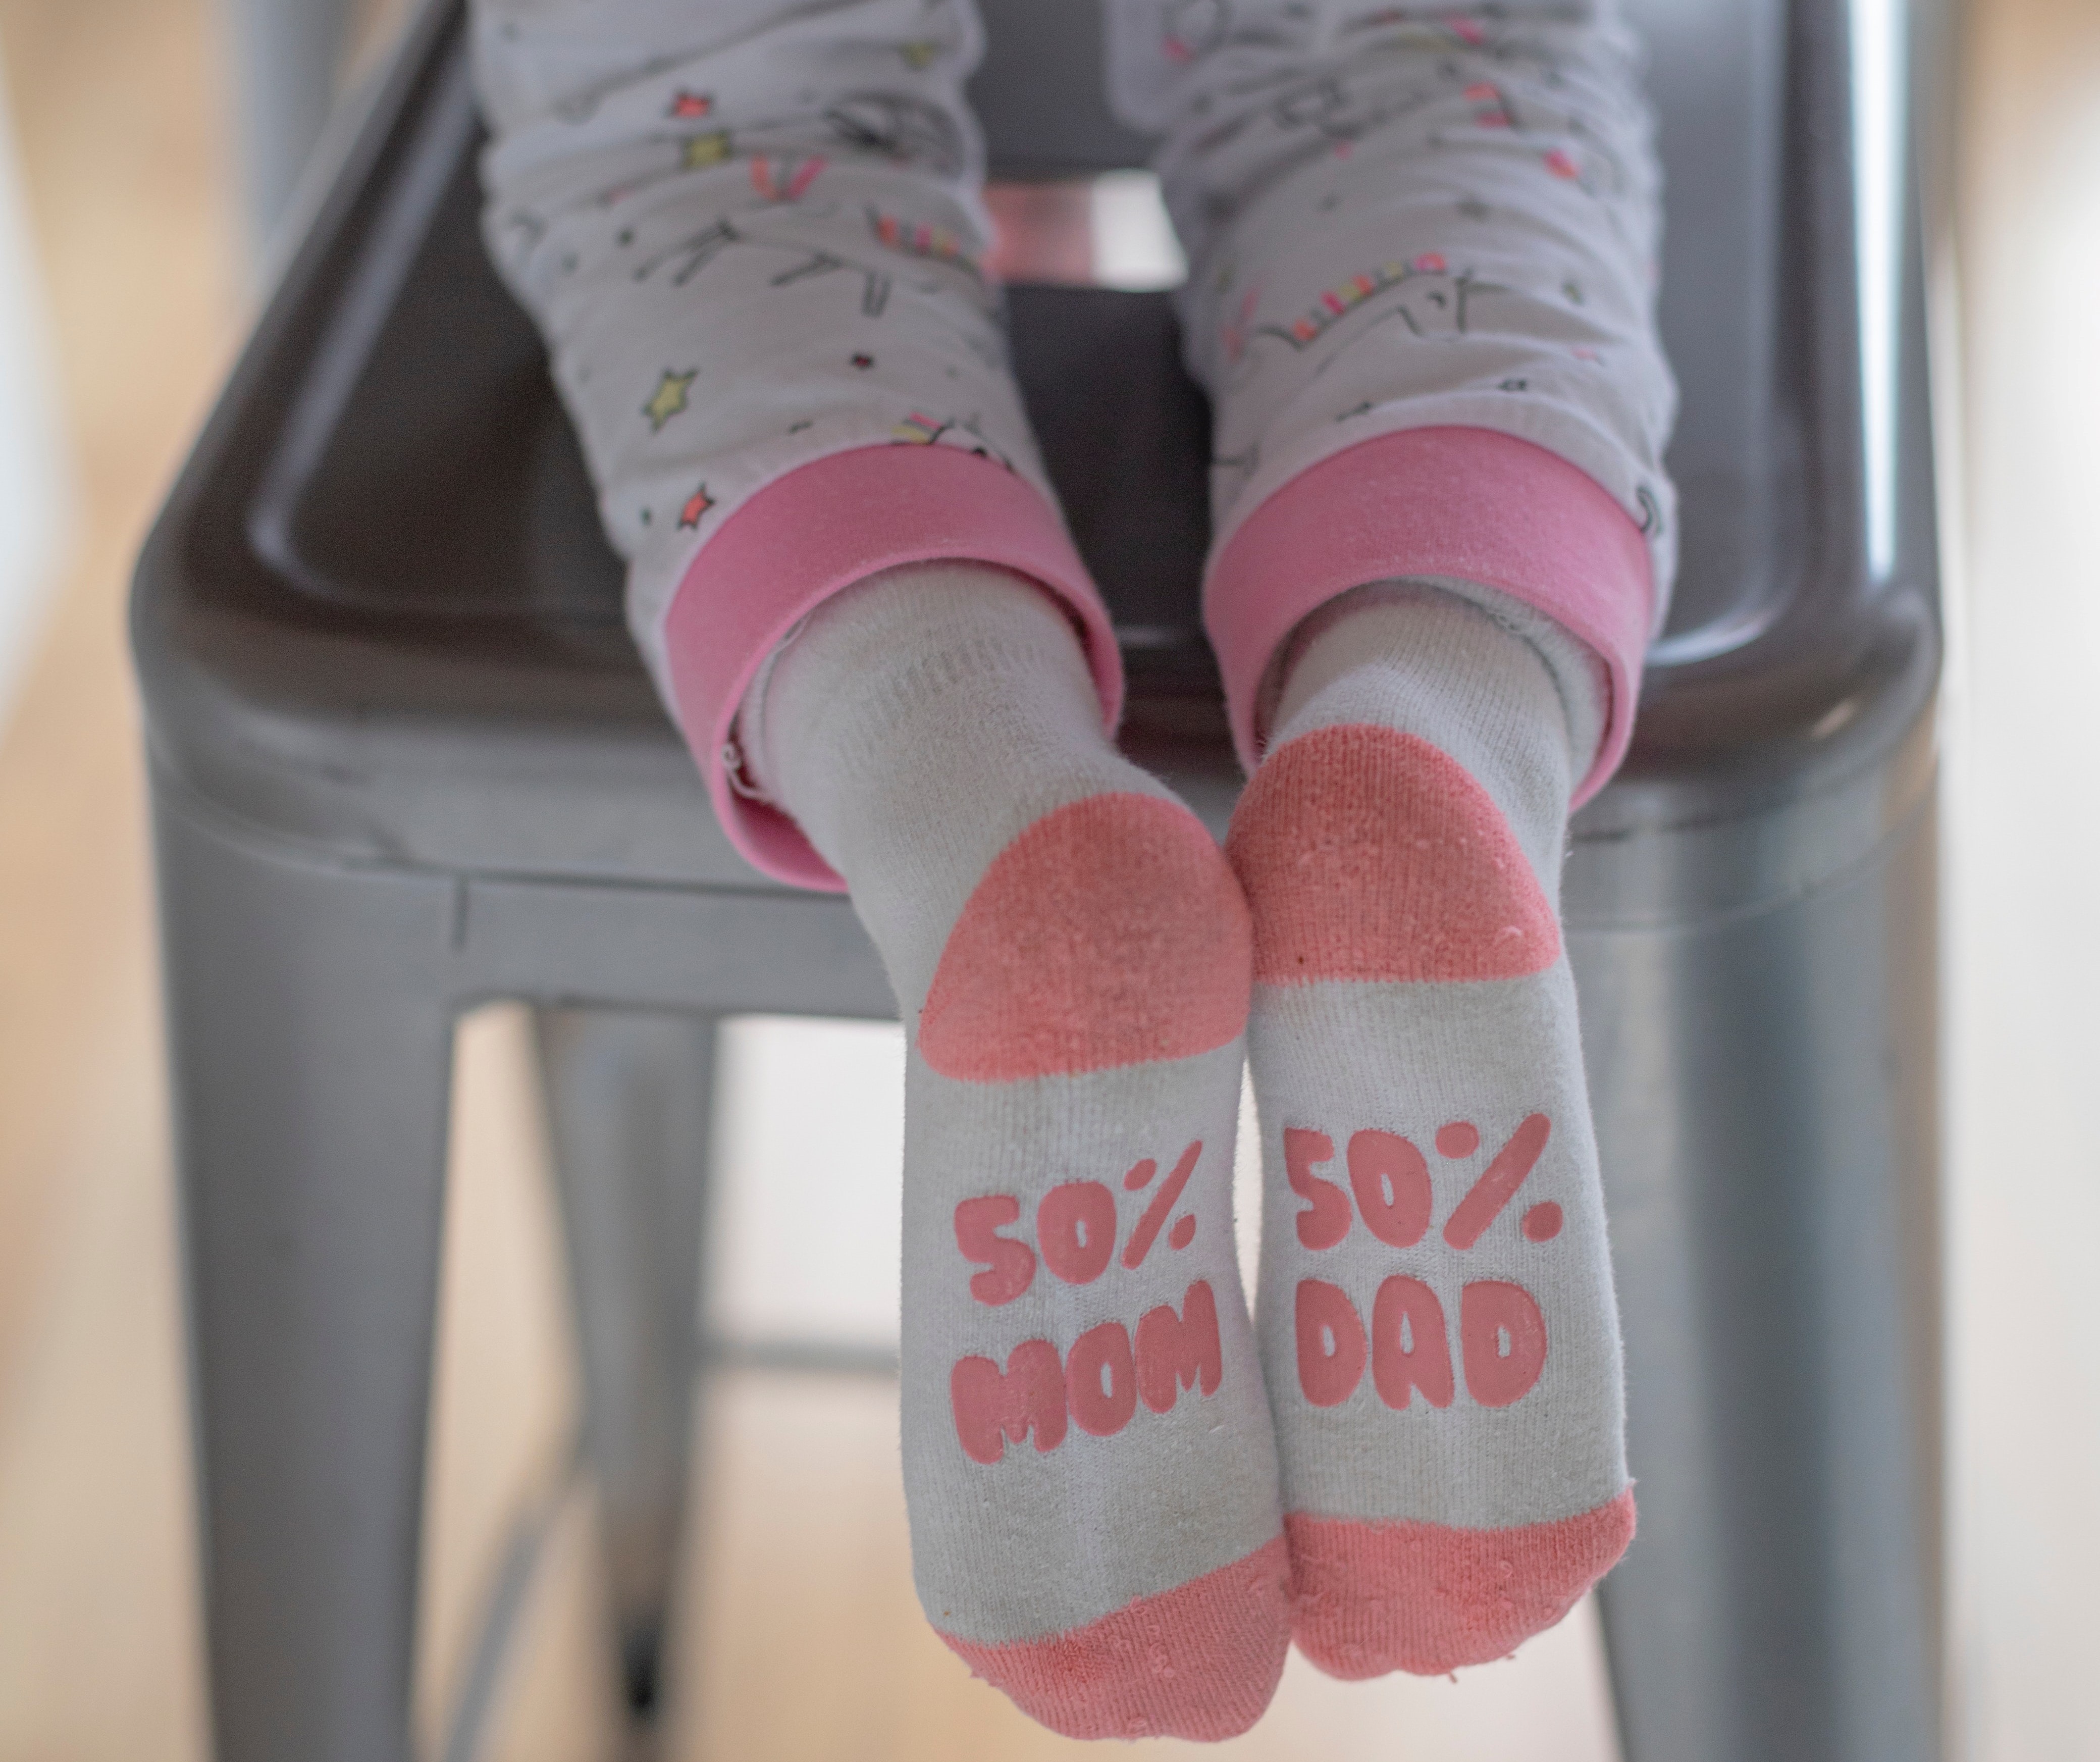 Protiskluzové ponožky jsou praktické pro menší děti